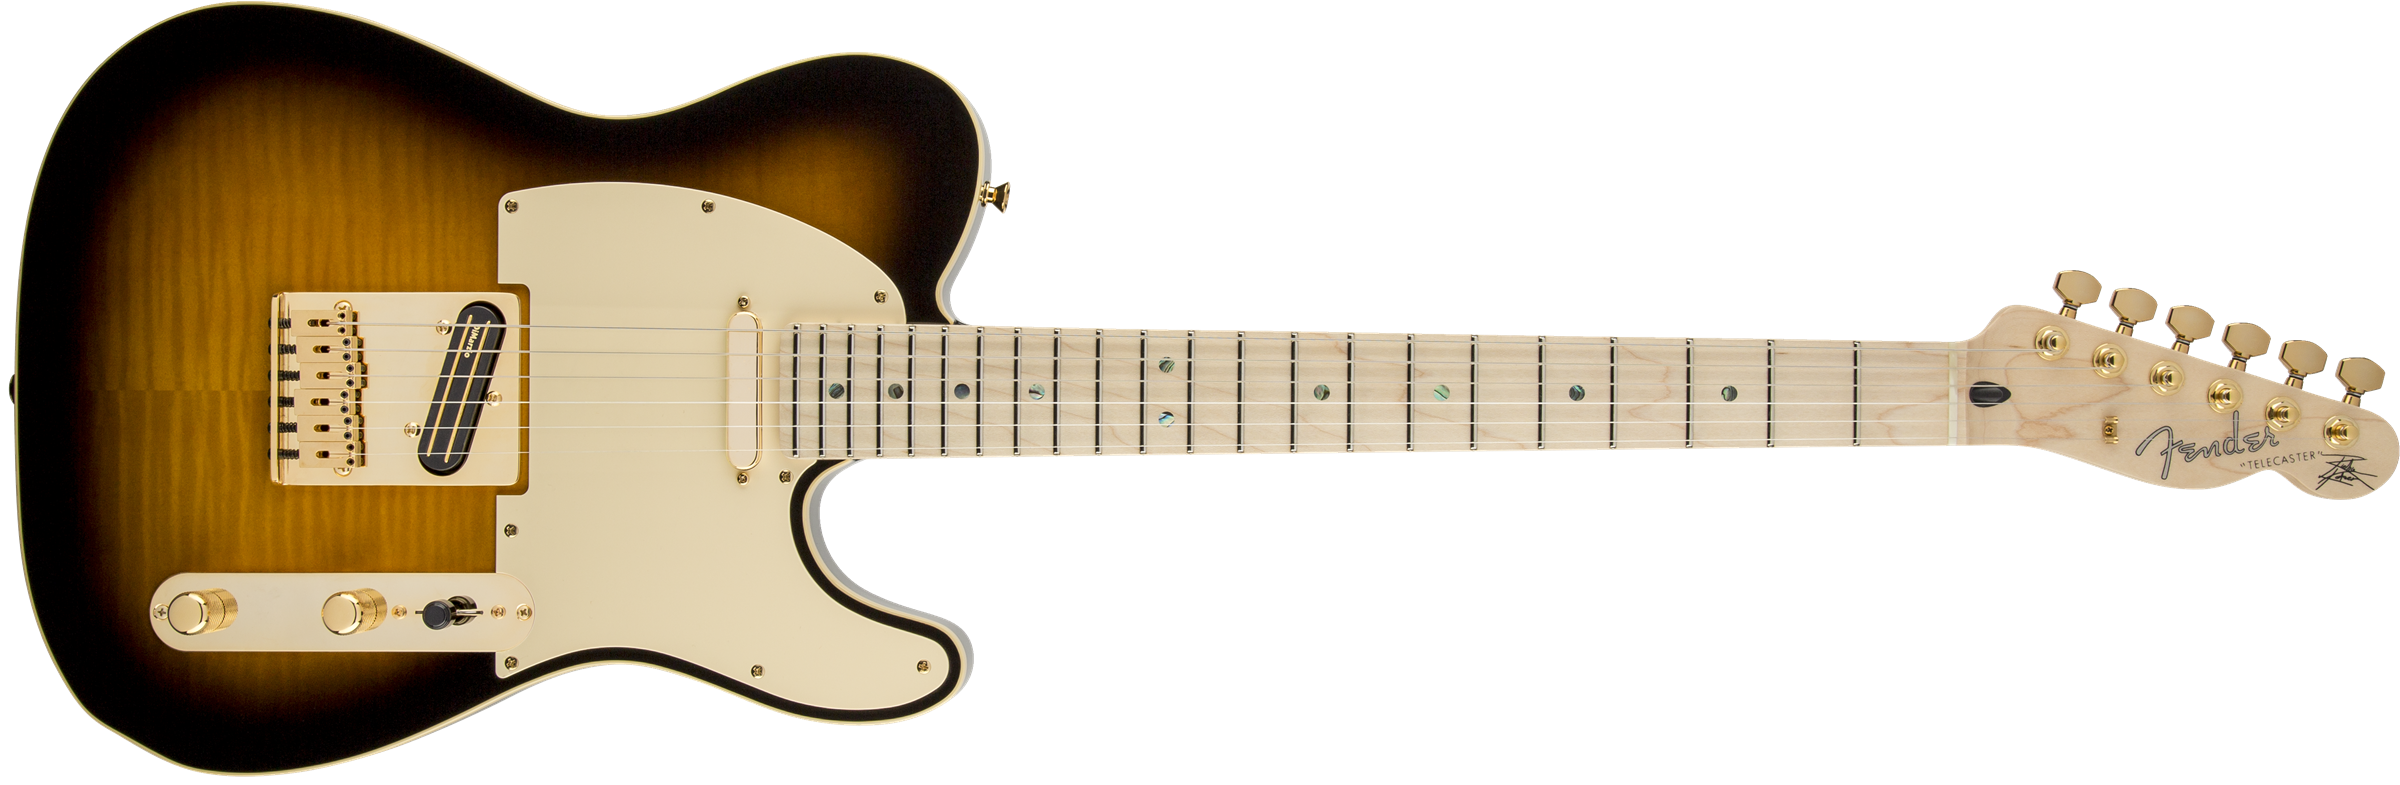 Fender Telecaster Richie Kotzen (jap, Mn) - Brown Sunburst - Televorm elektrische gitaar - Variation 1